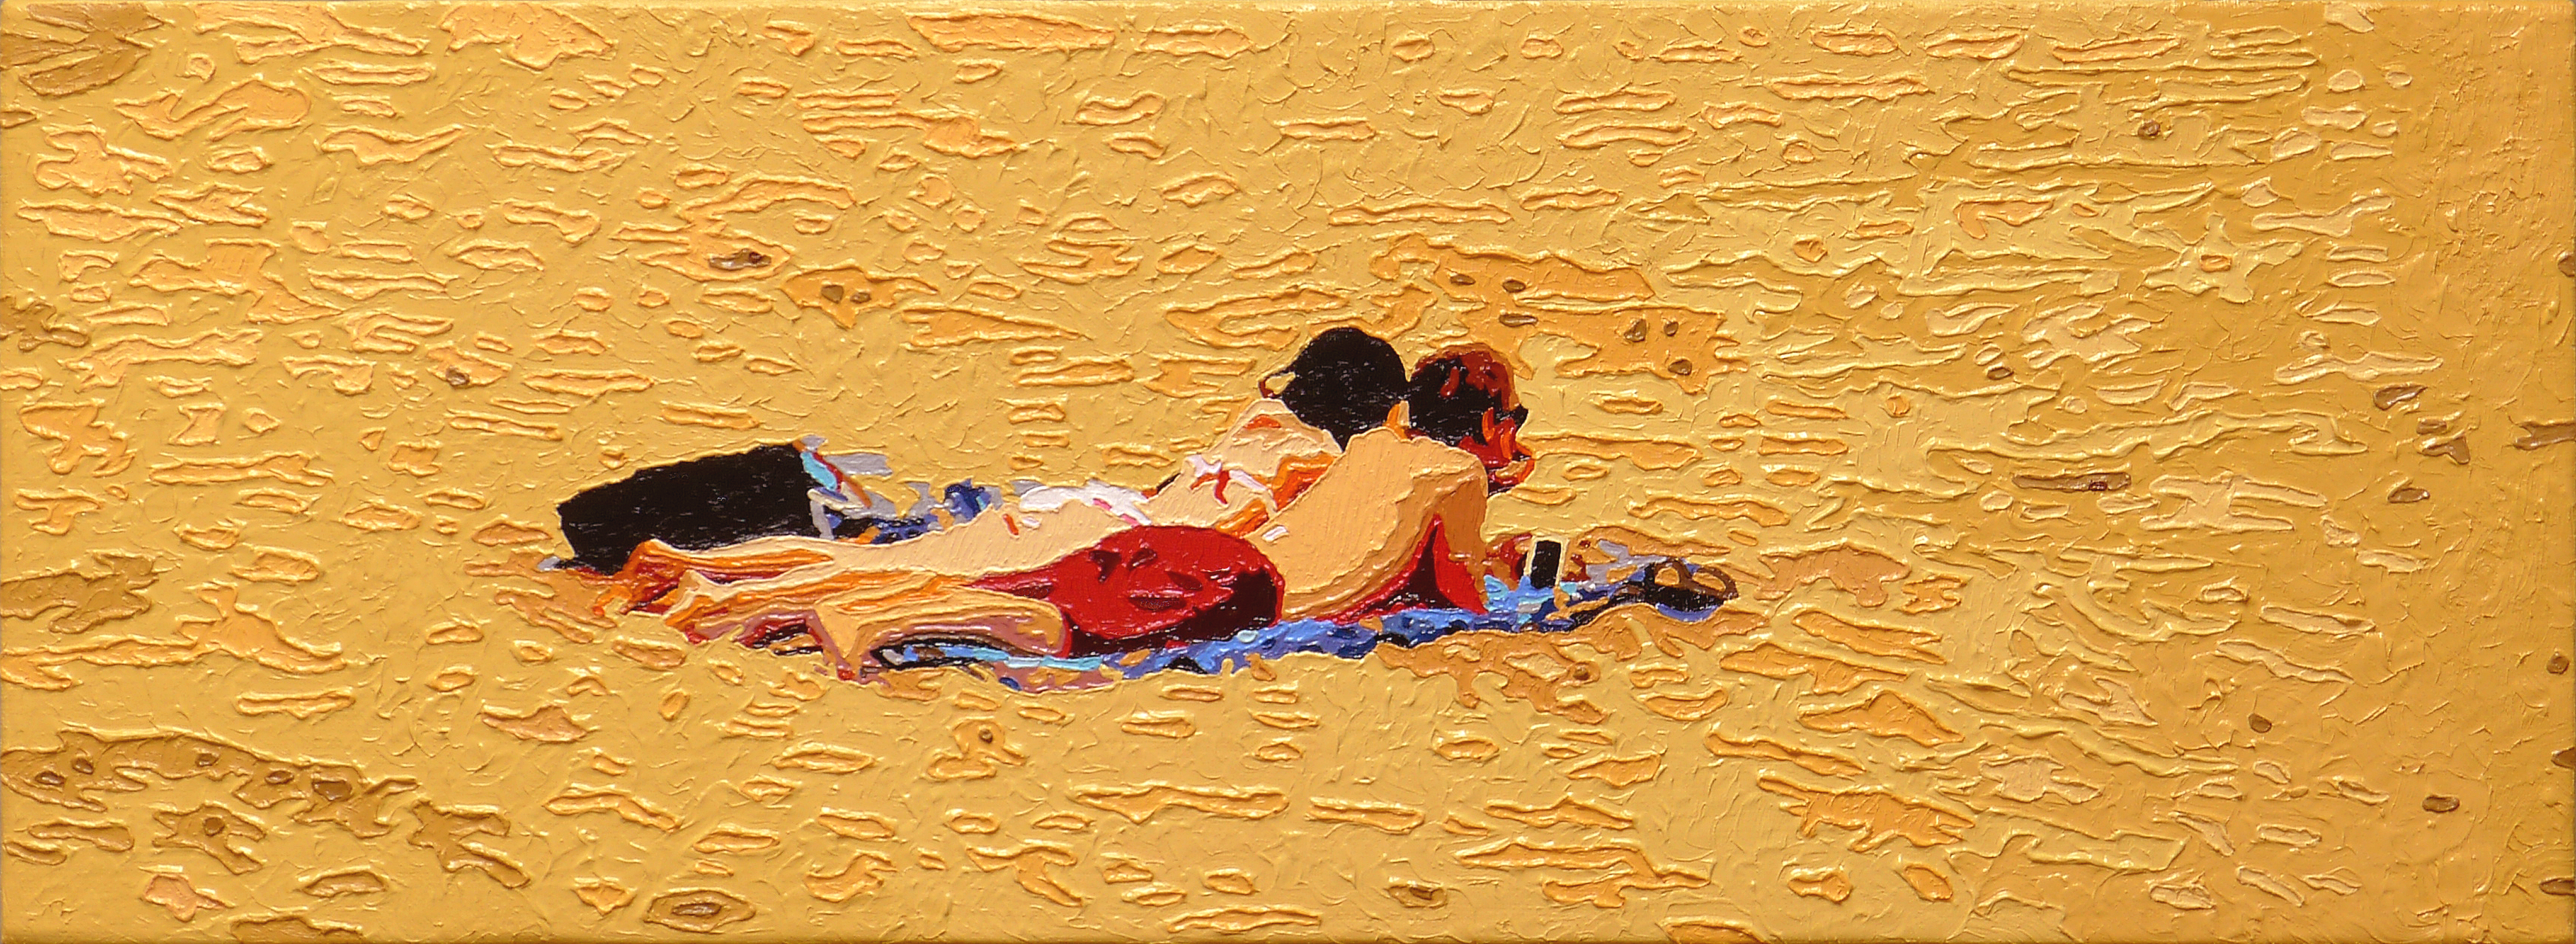 The Lovers, 20160630, Oil on canvas, 20.2 x 55.0cm.jpg